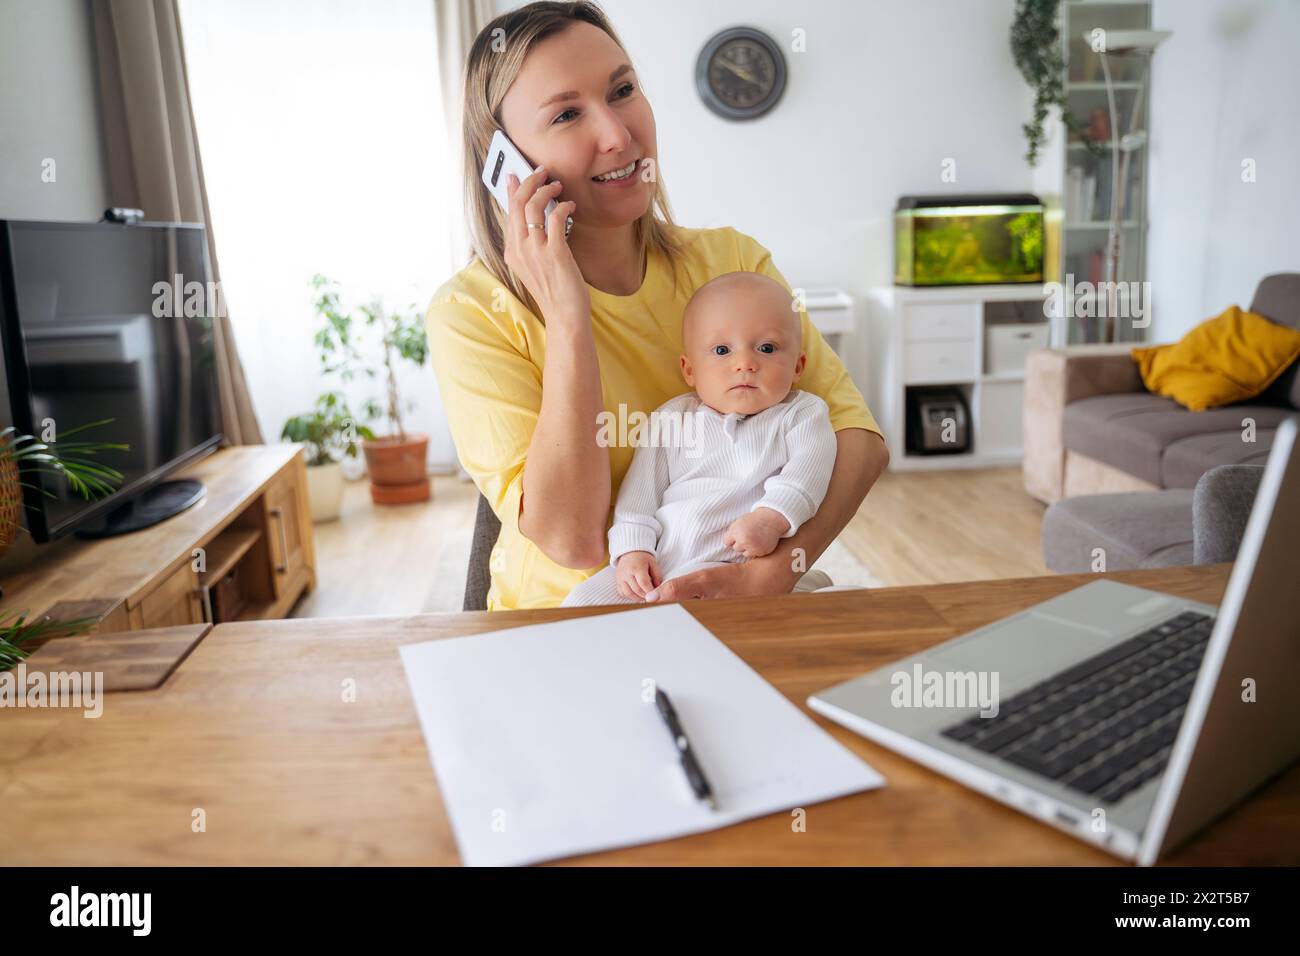 Lächelnde Geschäftsfrau, die am Smartphone spricht und mit dem Sohn am Tisch sitzt Stockfoto